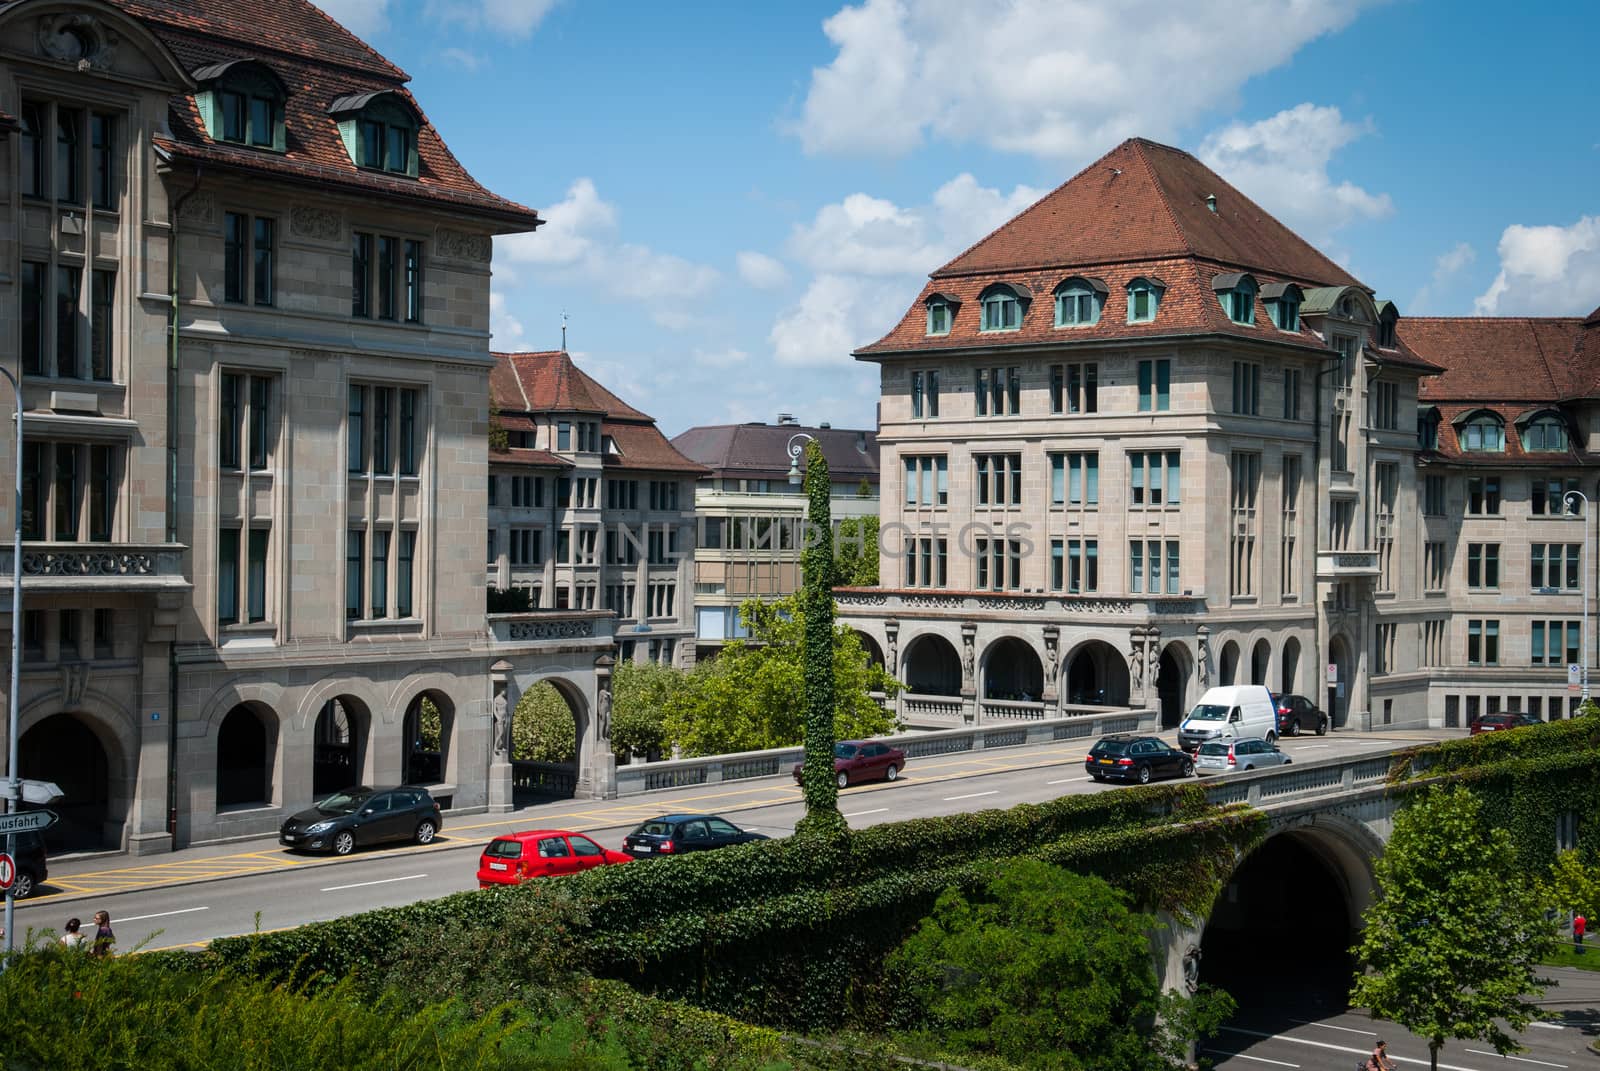 Street view and architecture in Zurich, Switzerland